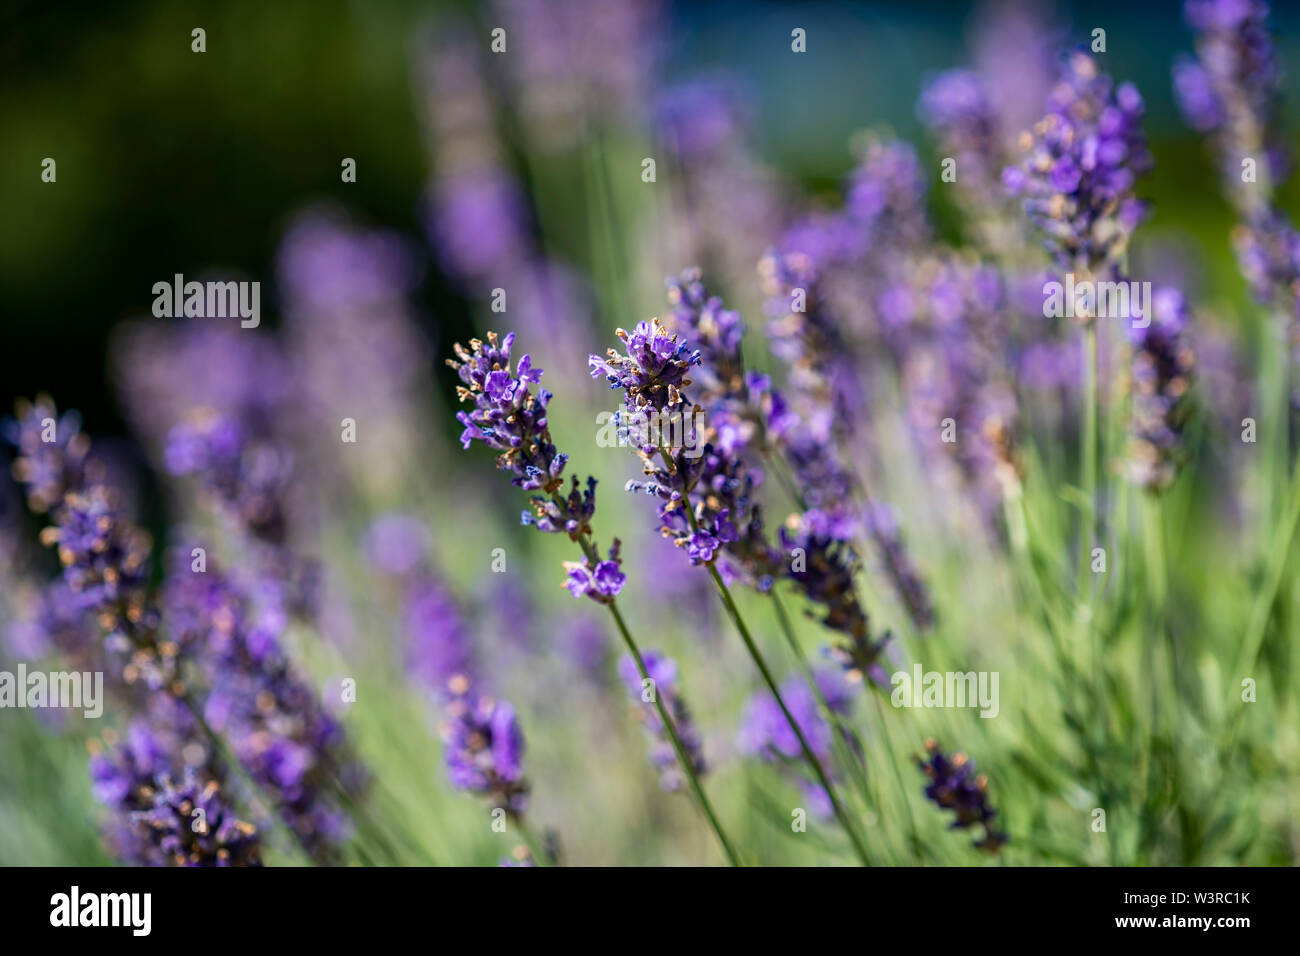 Lavanda ; duftender Lavendel ; Nahaufnahme; close up; Lavandula angustifolia Foto Stock